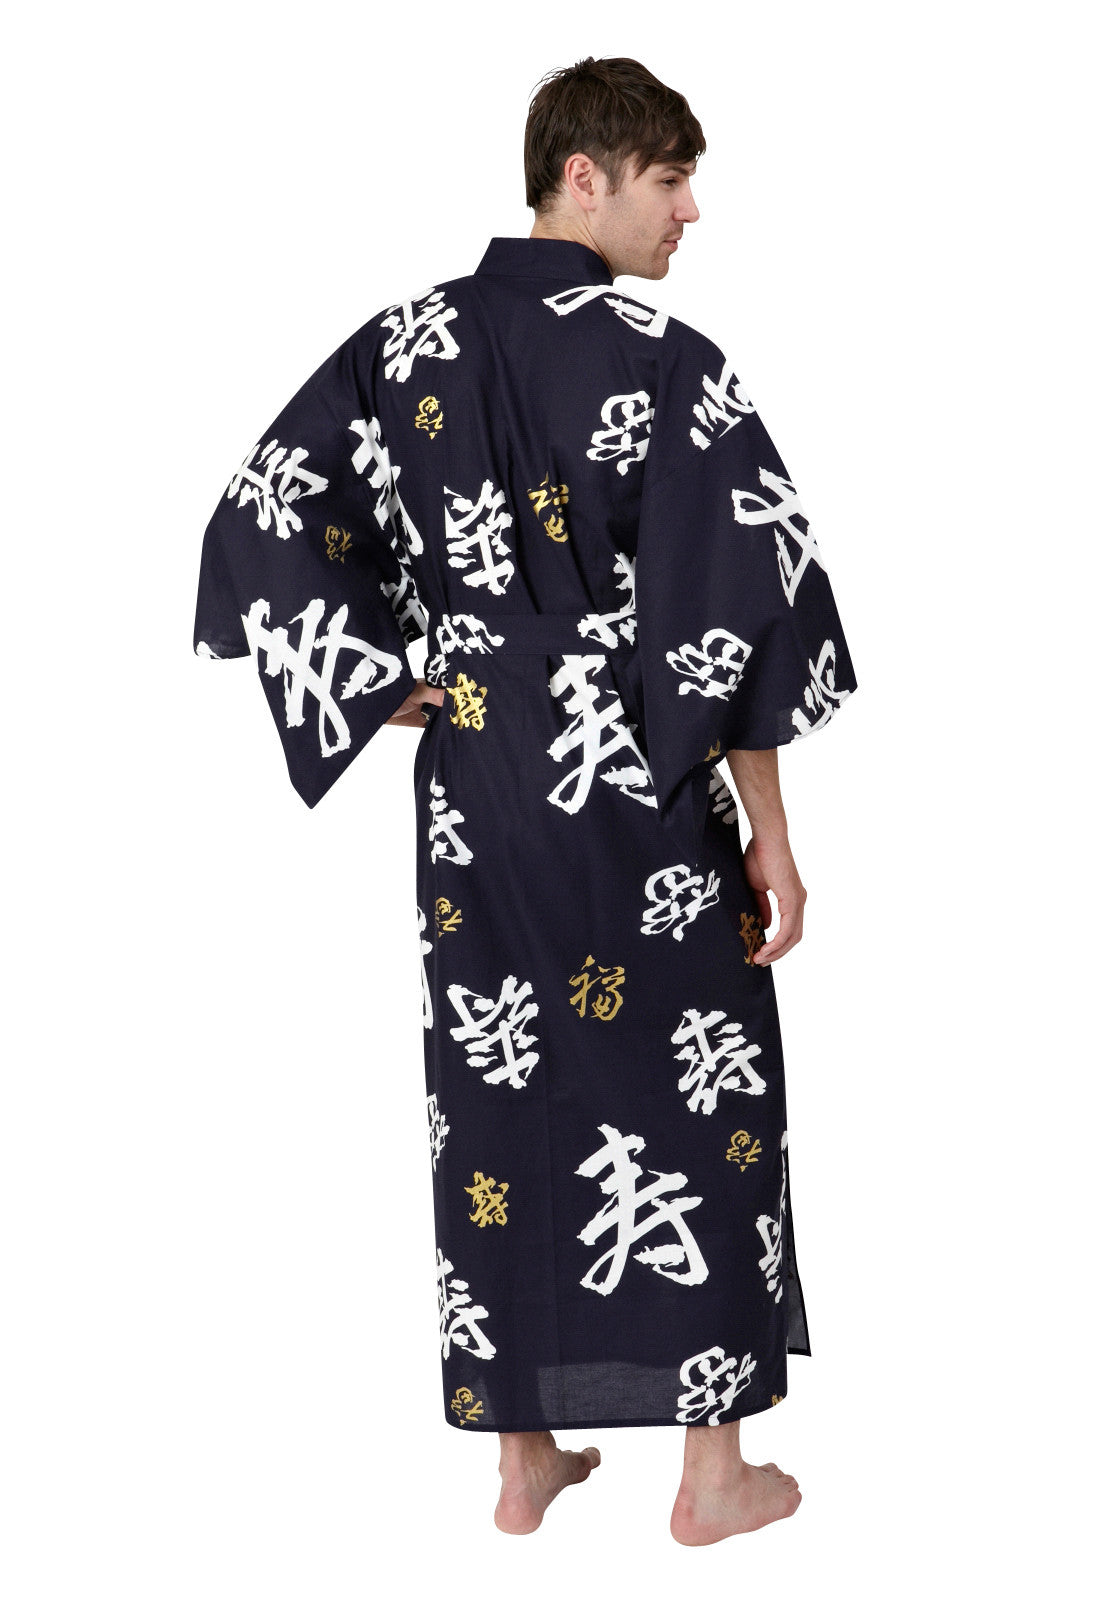 Kimono Robes, Yukata, mens kimono, beach cover ups, kimonos